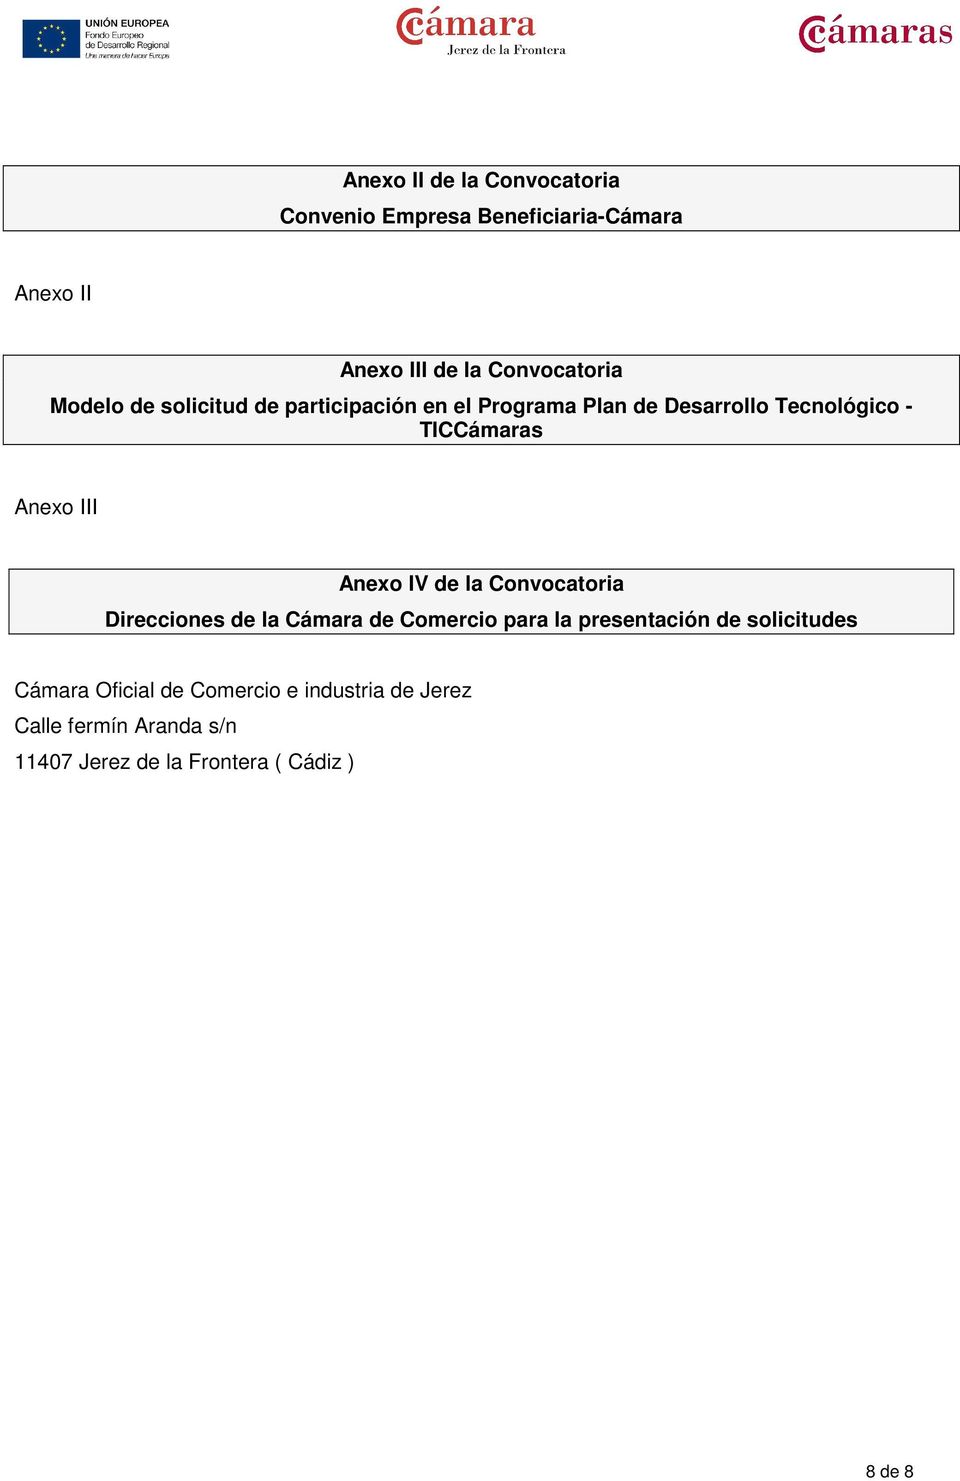 Anexo IV de la Convocatoria Direcciones de la Cámara de Comercio para la presentación de solicitudes